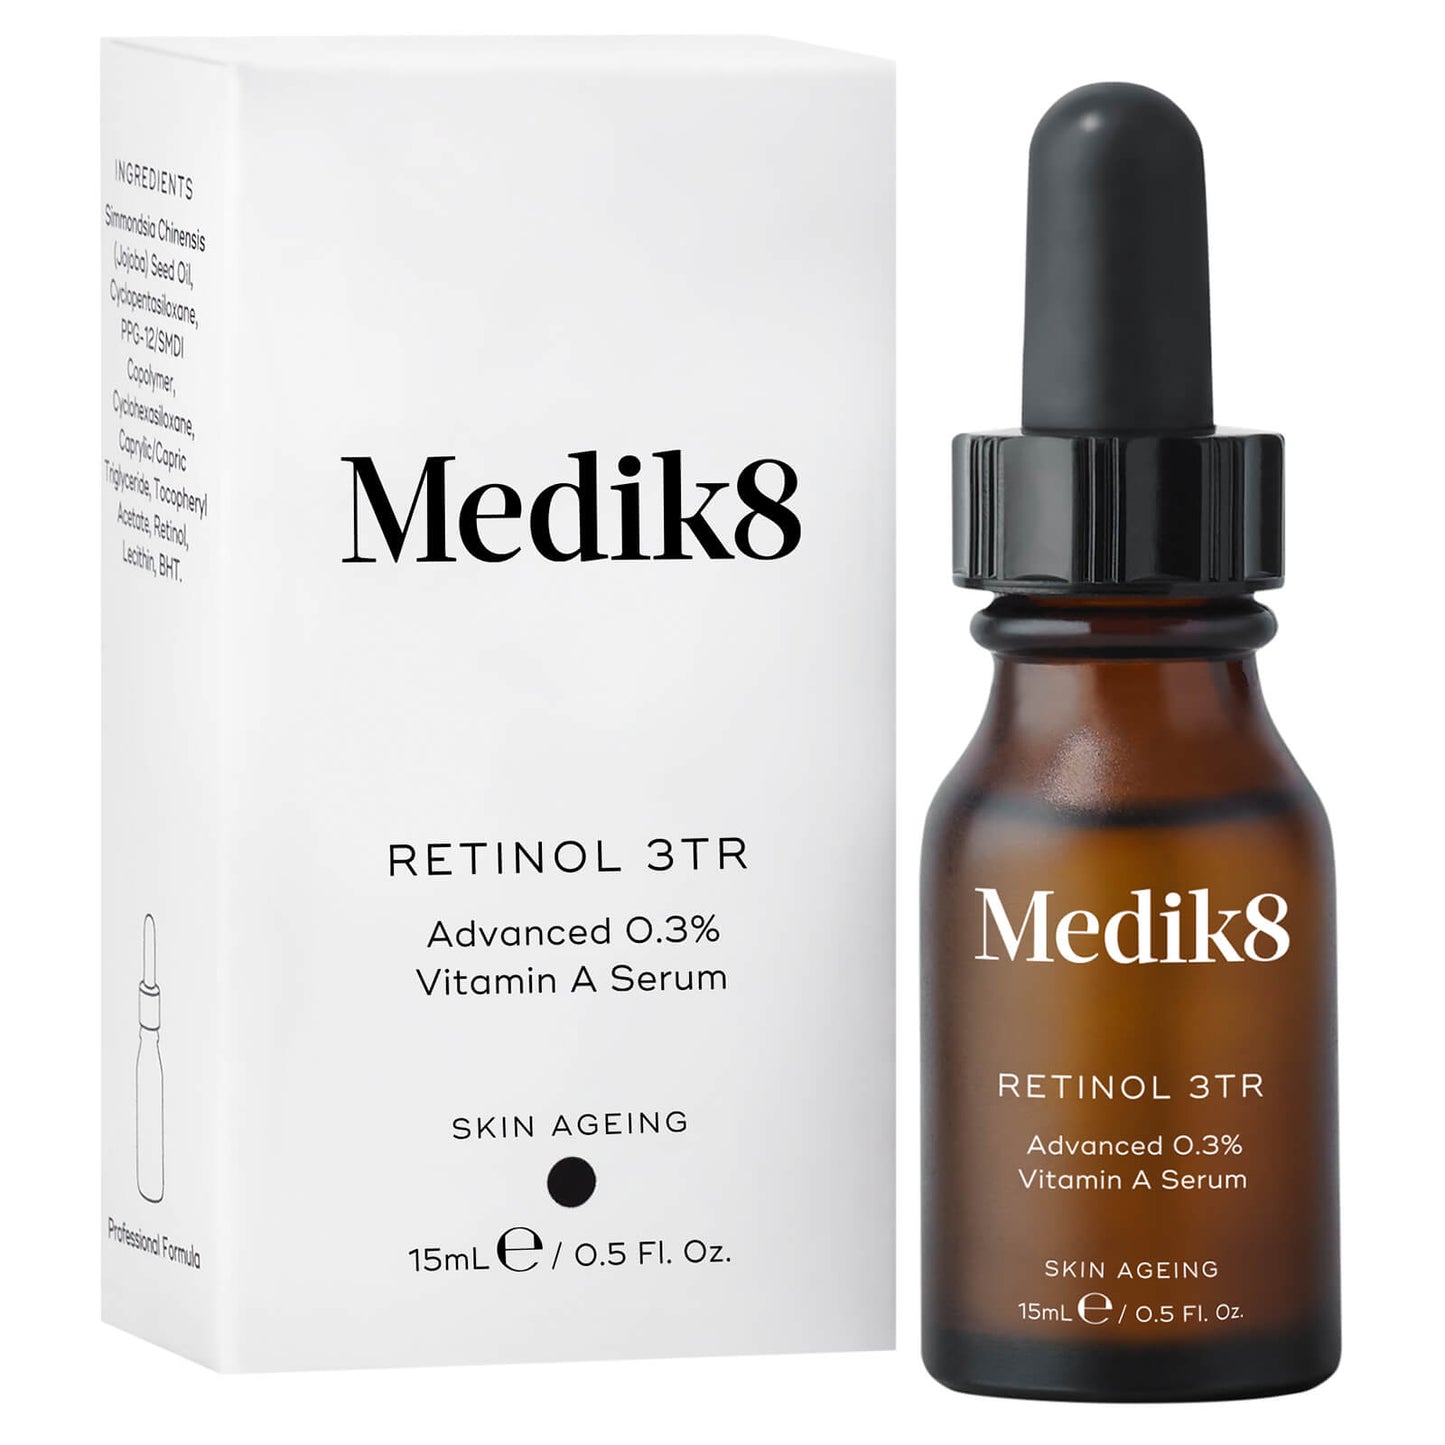 Medik8 Retinol 3TR 15ml Advanced 0.3% Vitamin A Serum